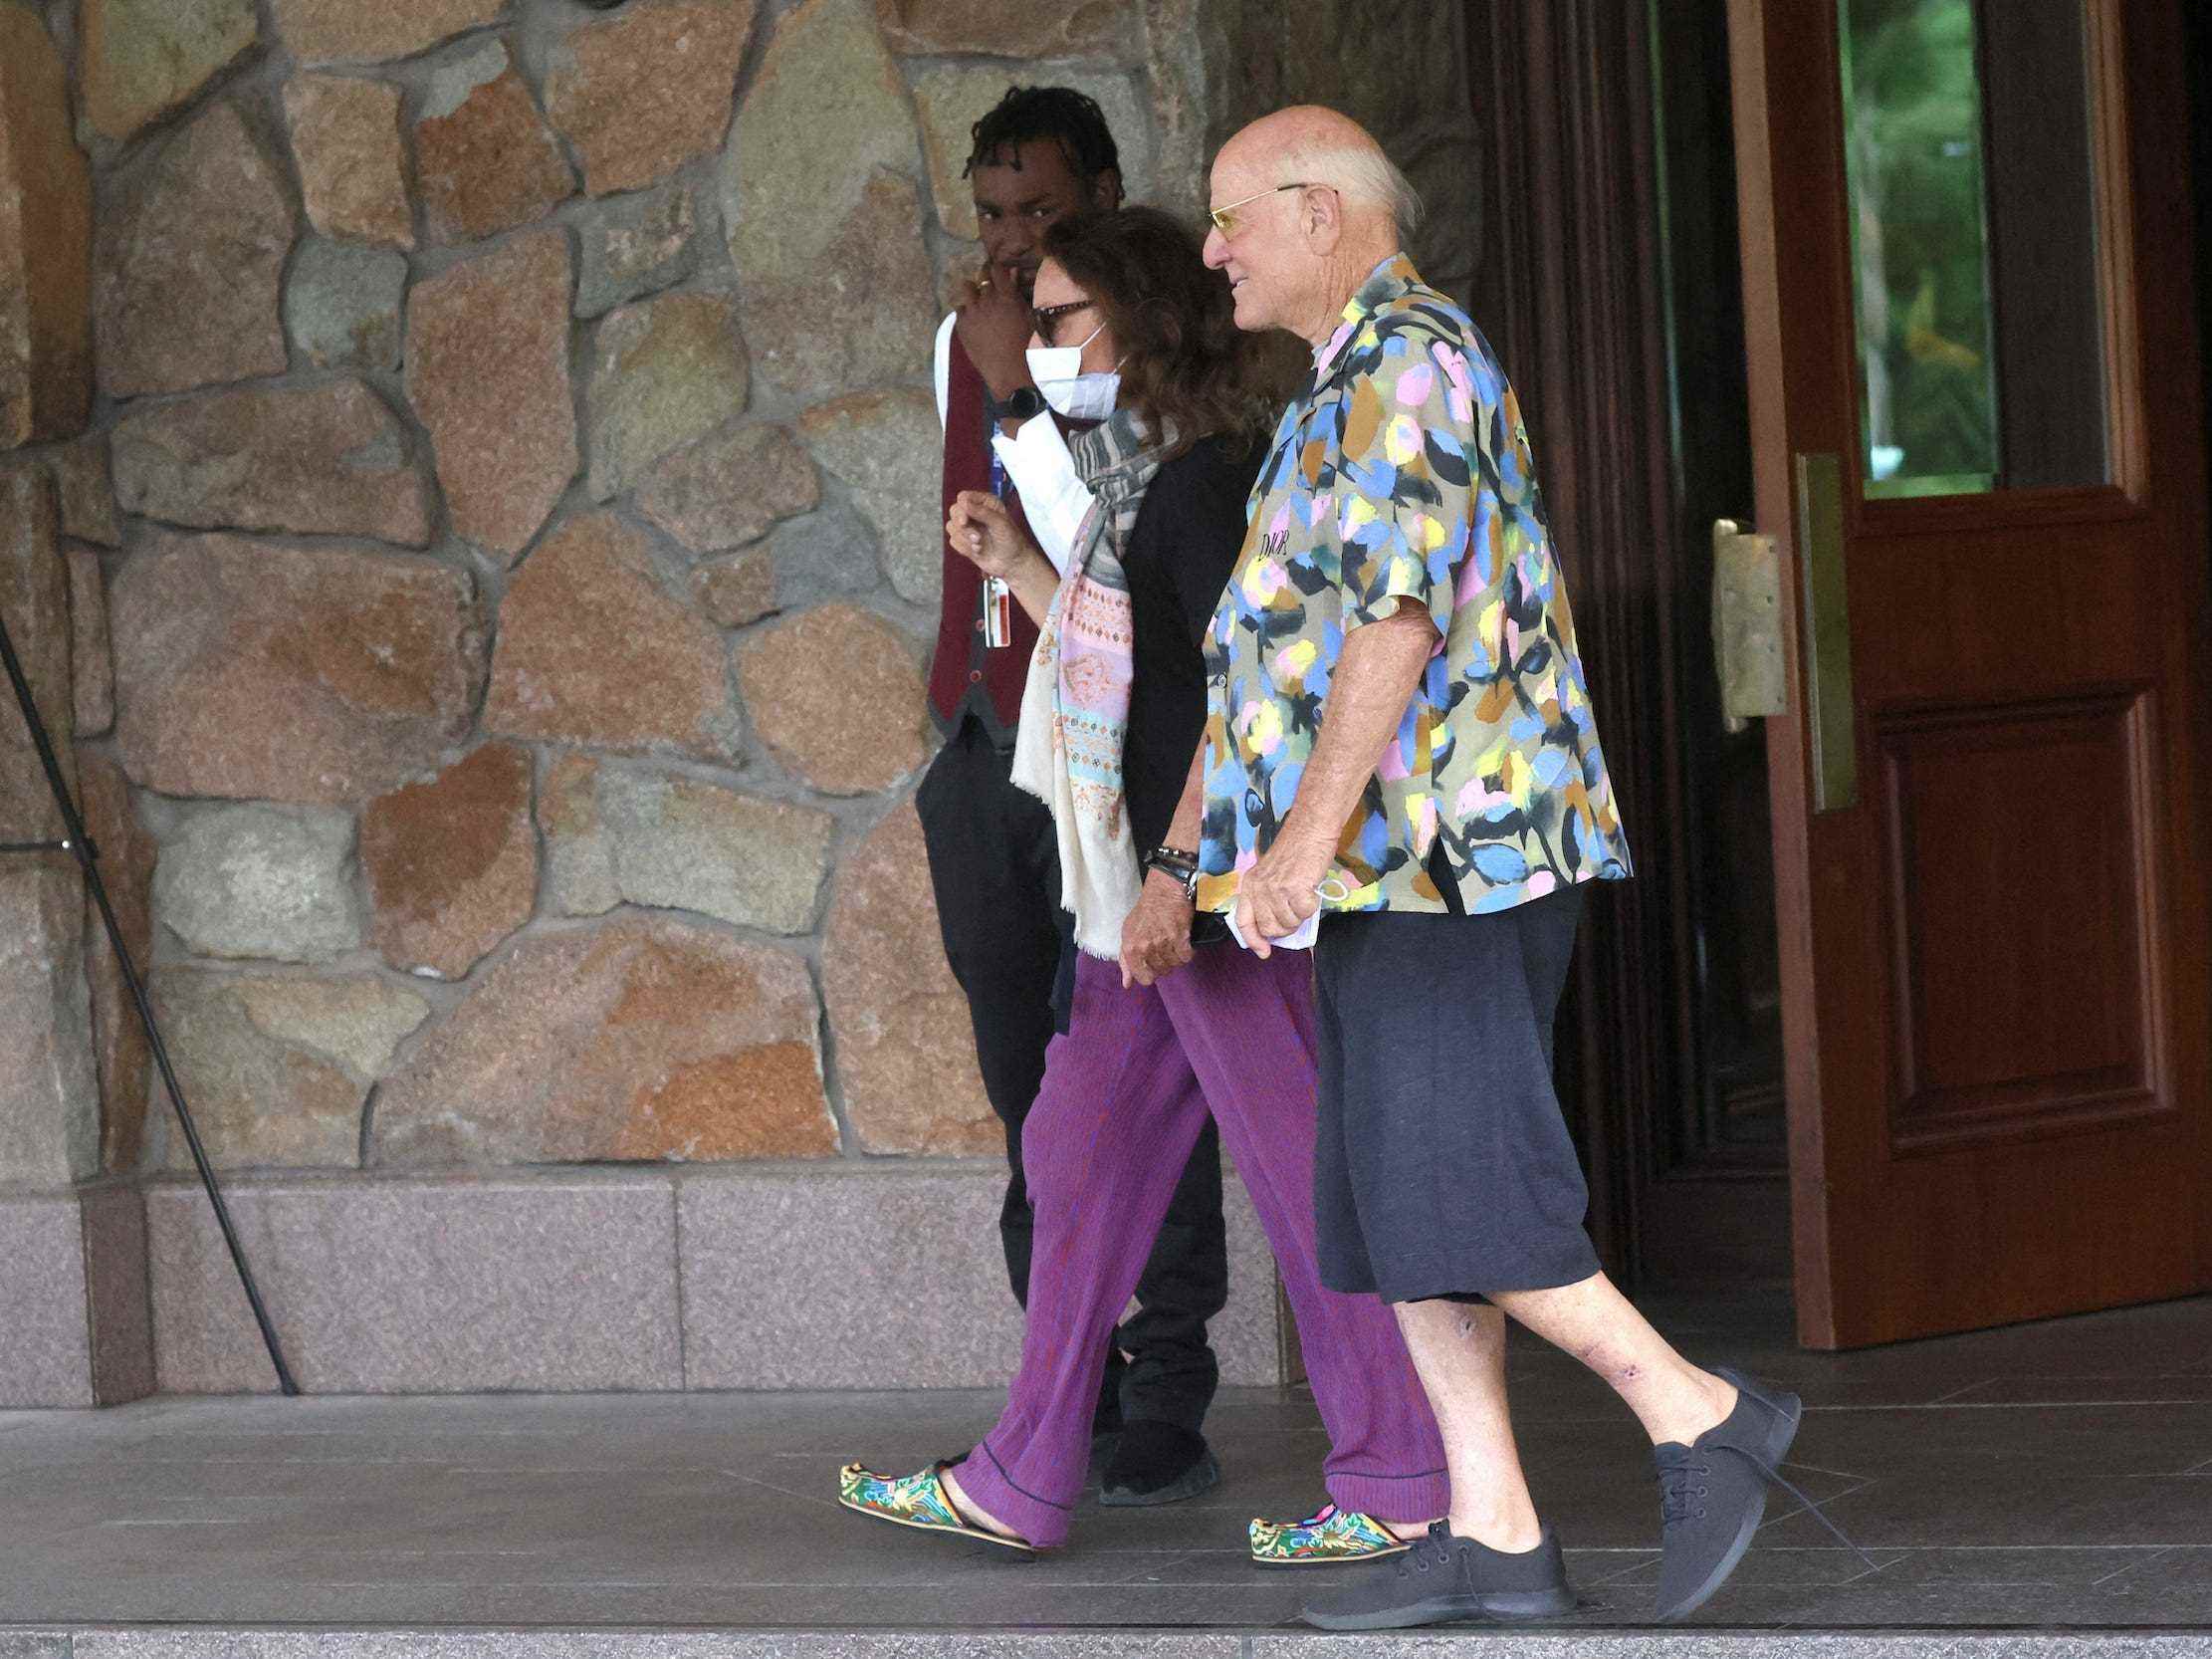 Der IAC-Vorsitzende Barry Diller und die Modedesignerin Diane von Furstenberg gehen auf der Sun Valley-Konferenz vor der Lodge spazieren